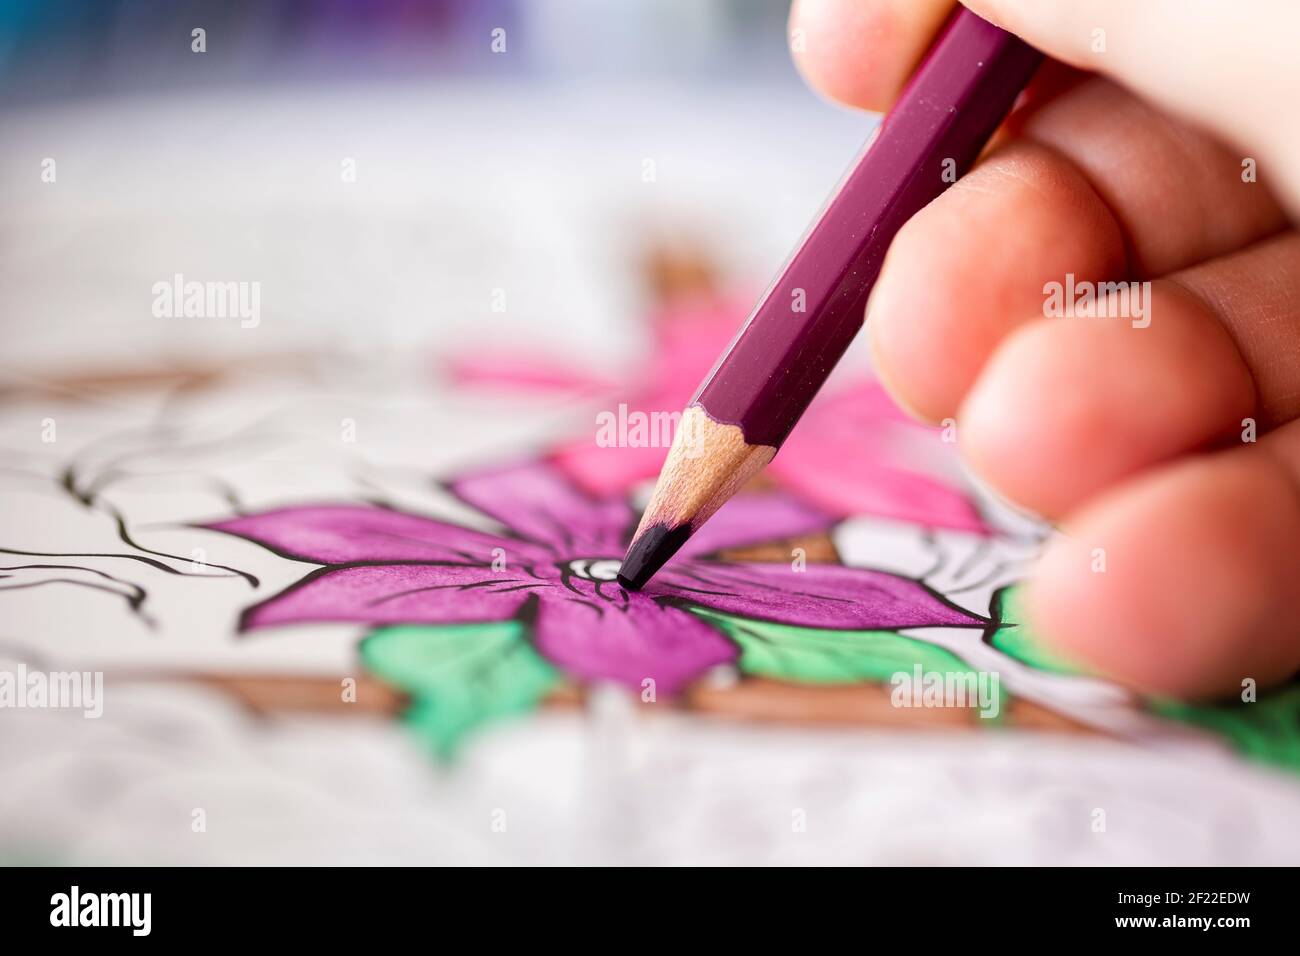 Das Nahaufnahme Makro-Porträt der Finger der Hand, die die violette hölzerne Bleistiftfärbung in der Blume im Malbuch für die Erwachsenen hält. Die Farbe ist schön Stockfoto